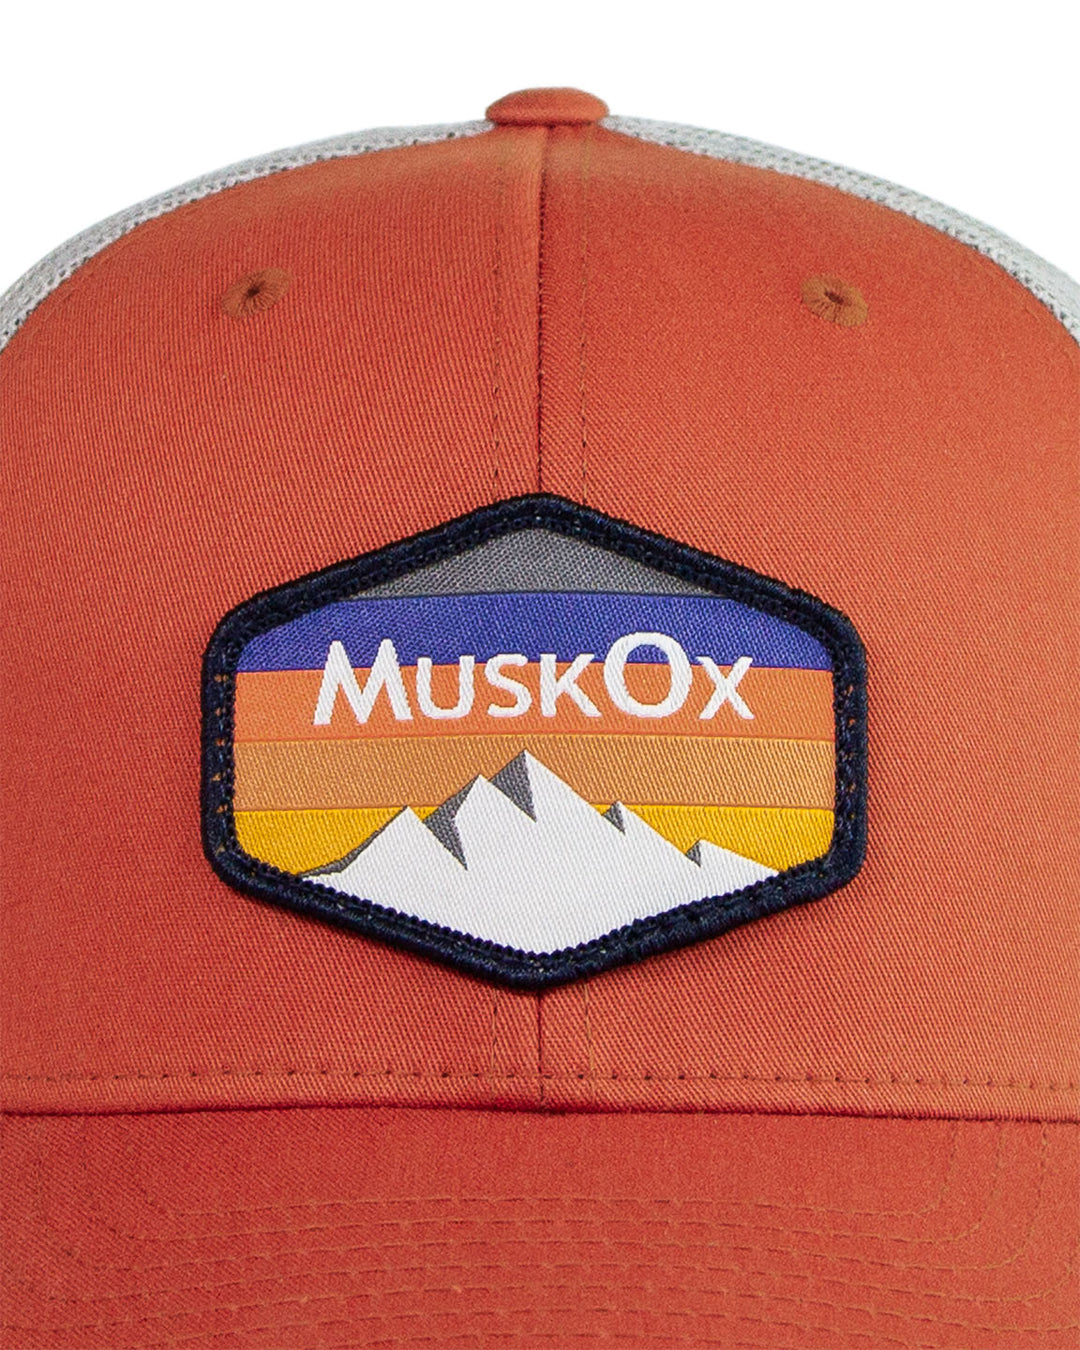 MuskOx Outdoor Apparel Mountain Adjustable Trucker Hat in Ember